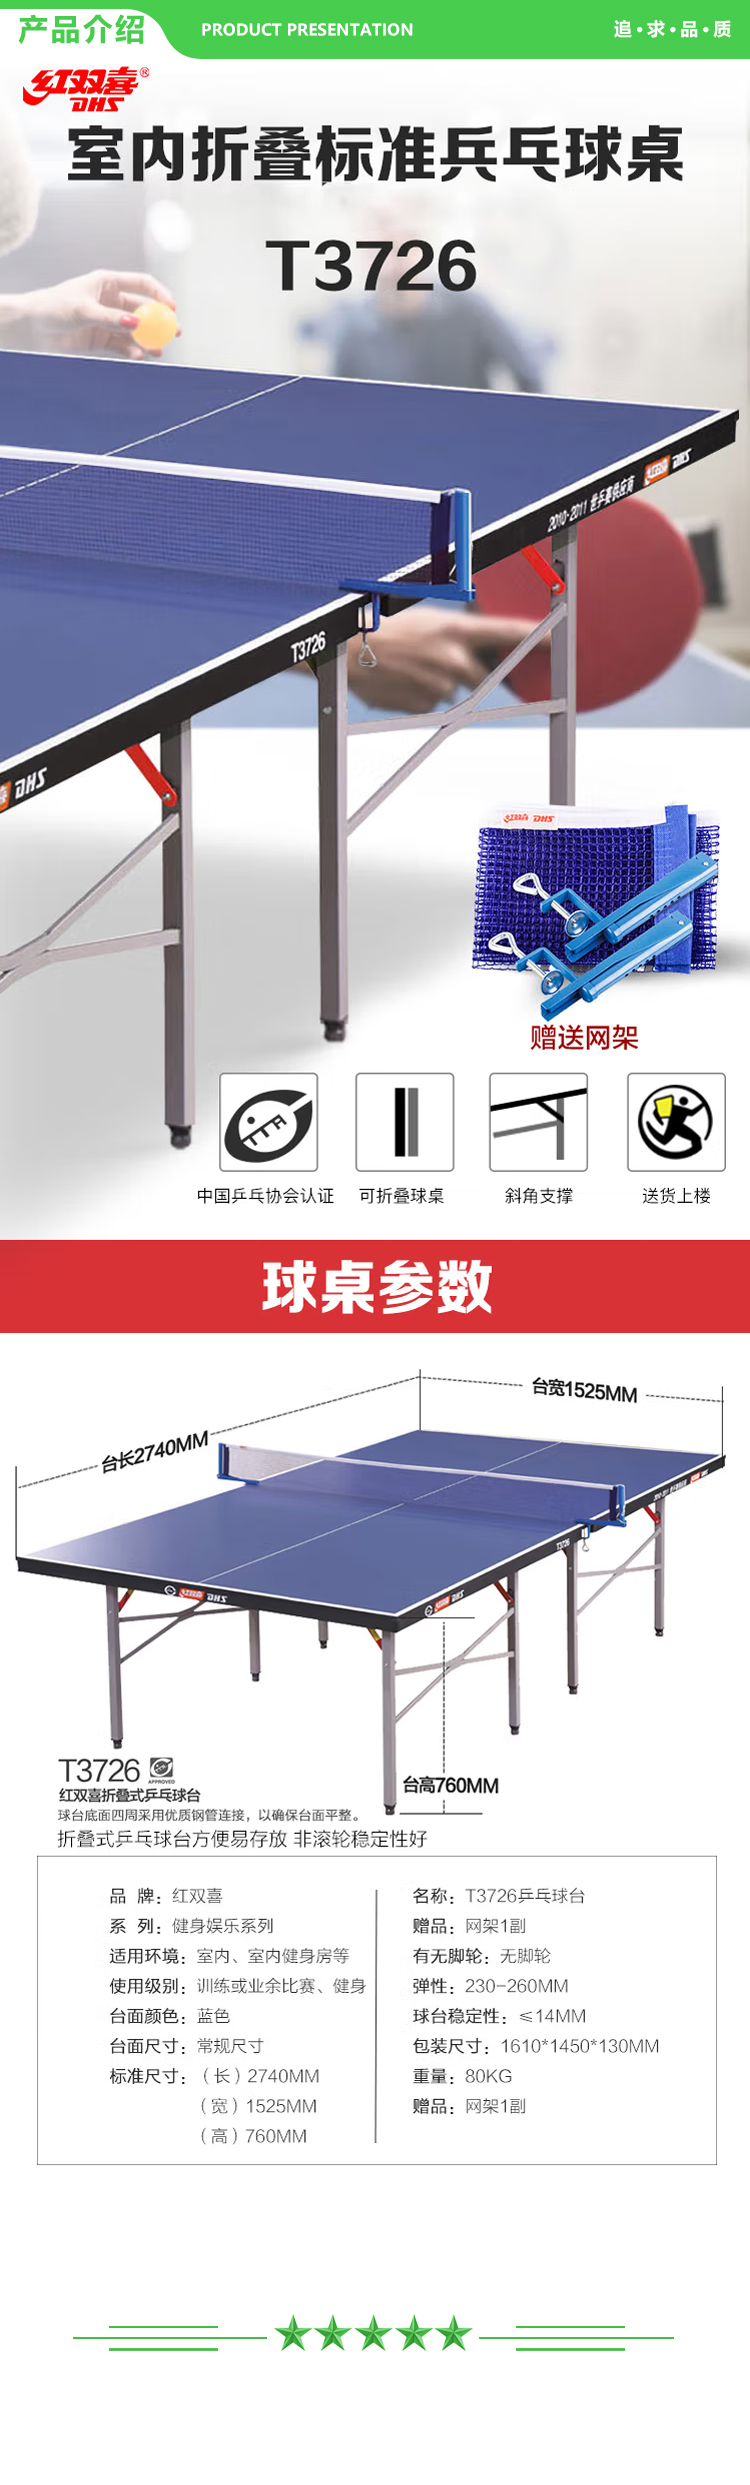 红双喜 DHS T3726 乒乓球桌 家用可折叠乒乓球台比赛训练乒乓球桌 赠兵乓网架 .jpg